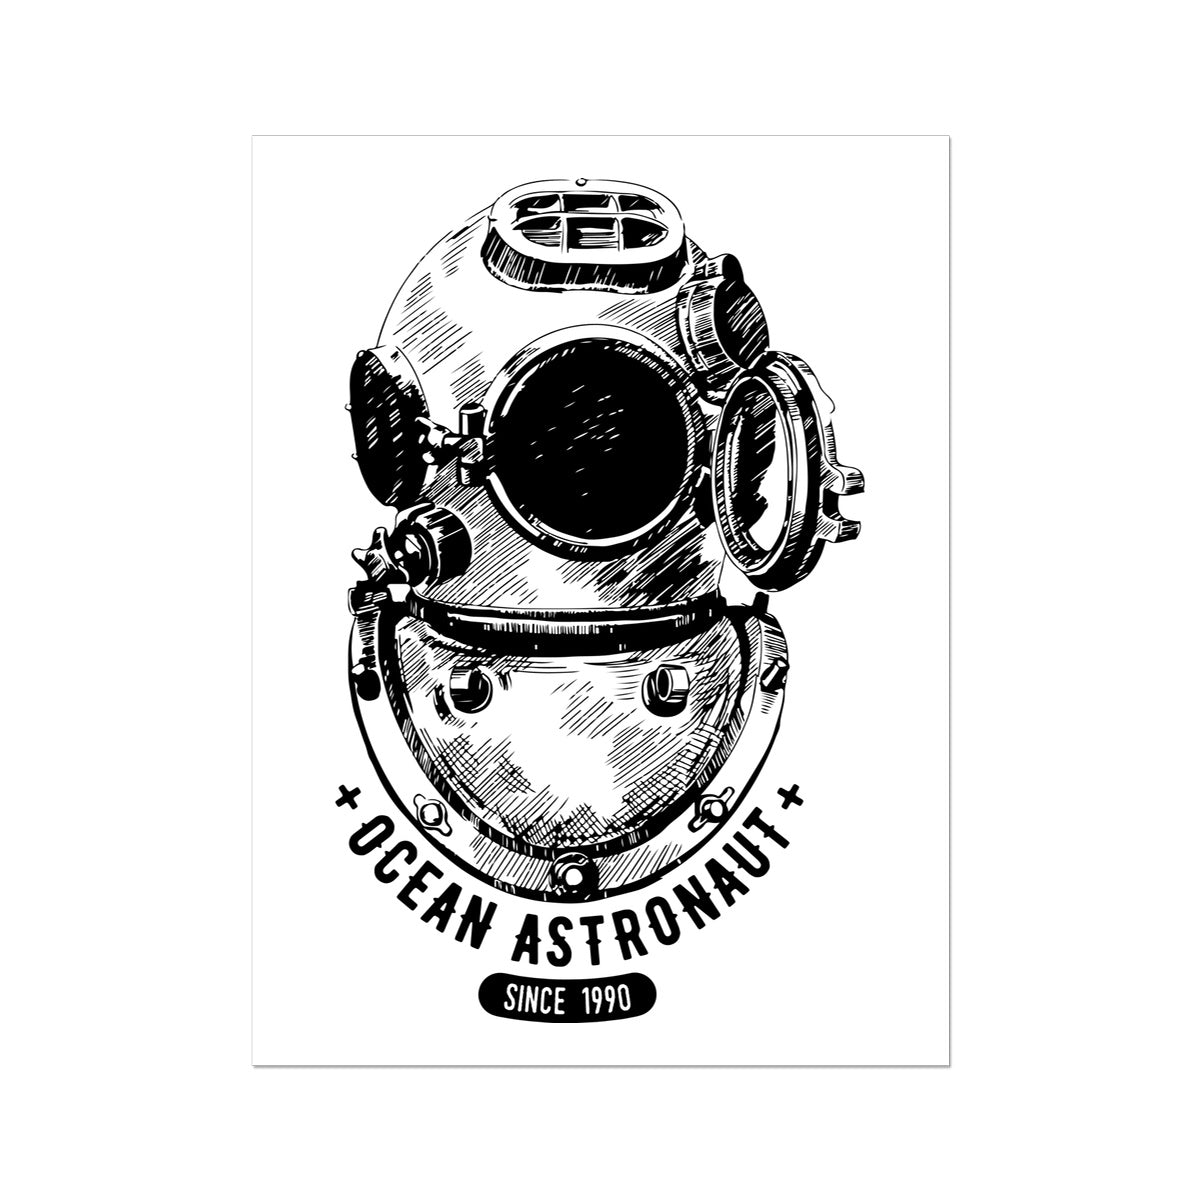 AQUA B&W - 05 - Ocean astronaut - Wall Art Poster